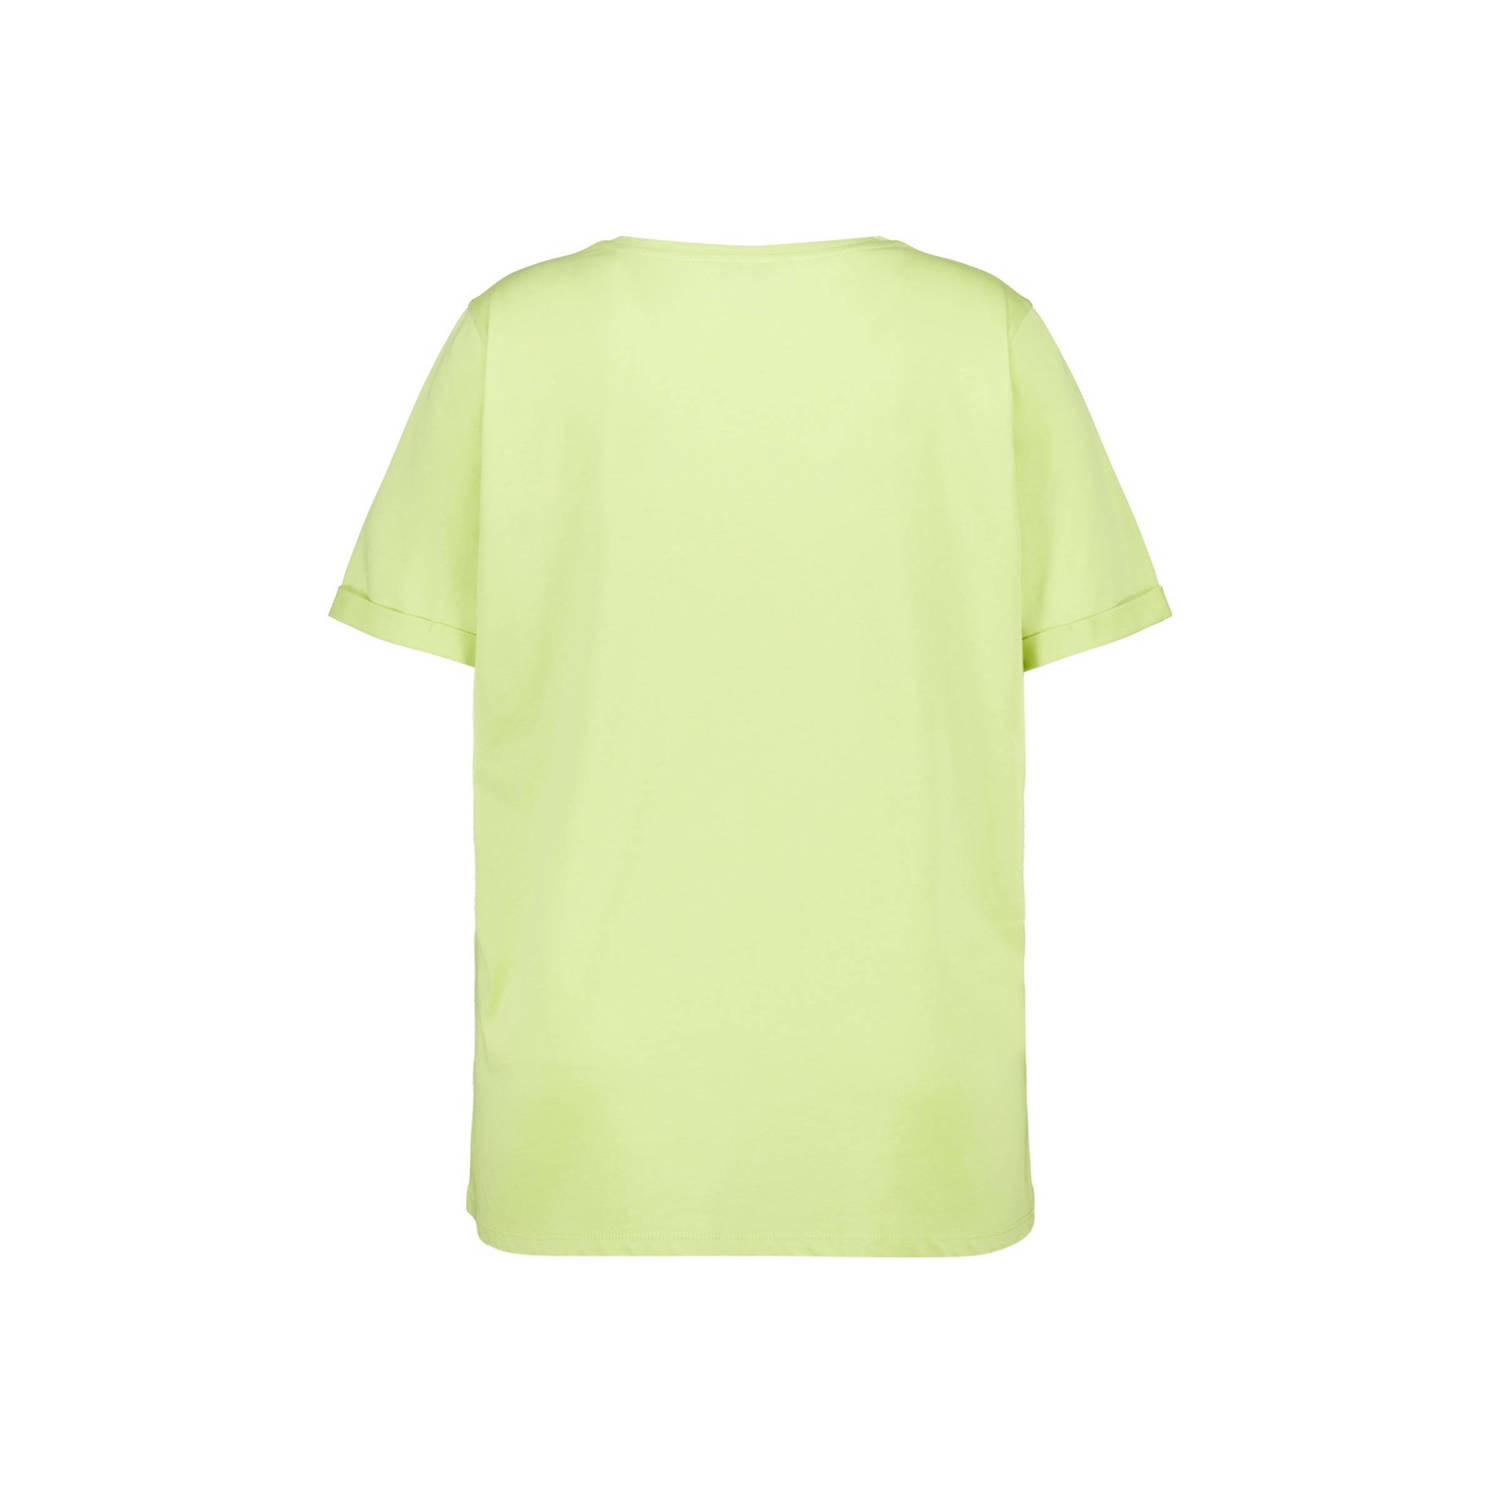 MS Mode T-shirt met printopdruk licht groen